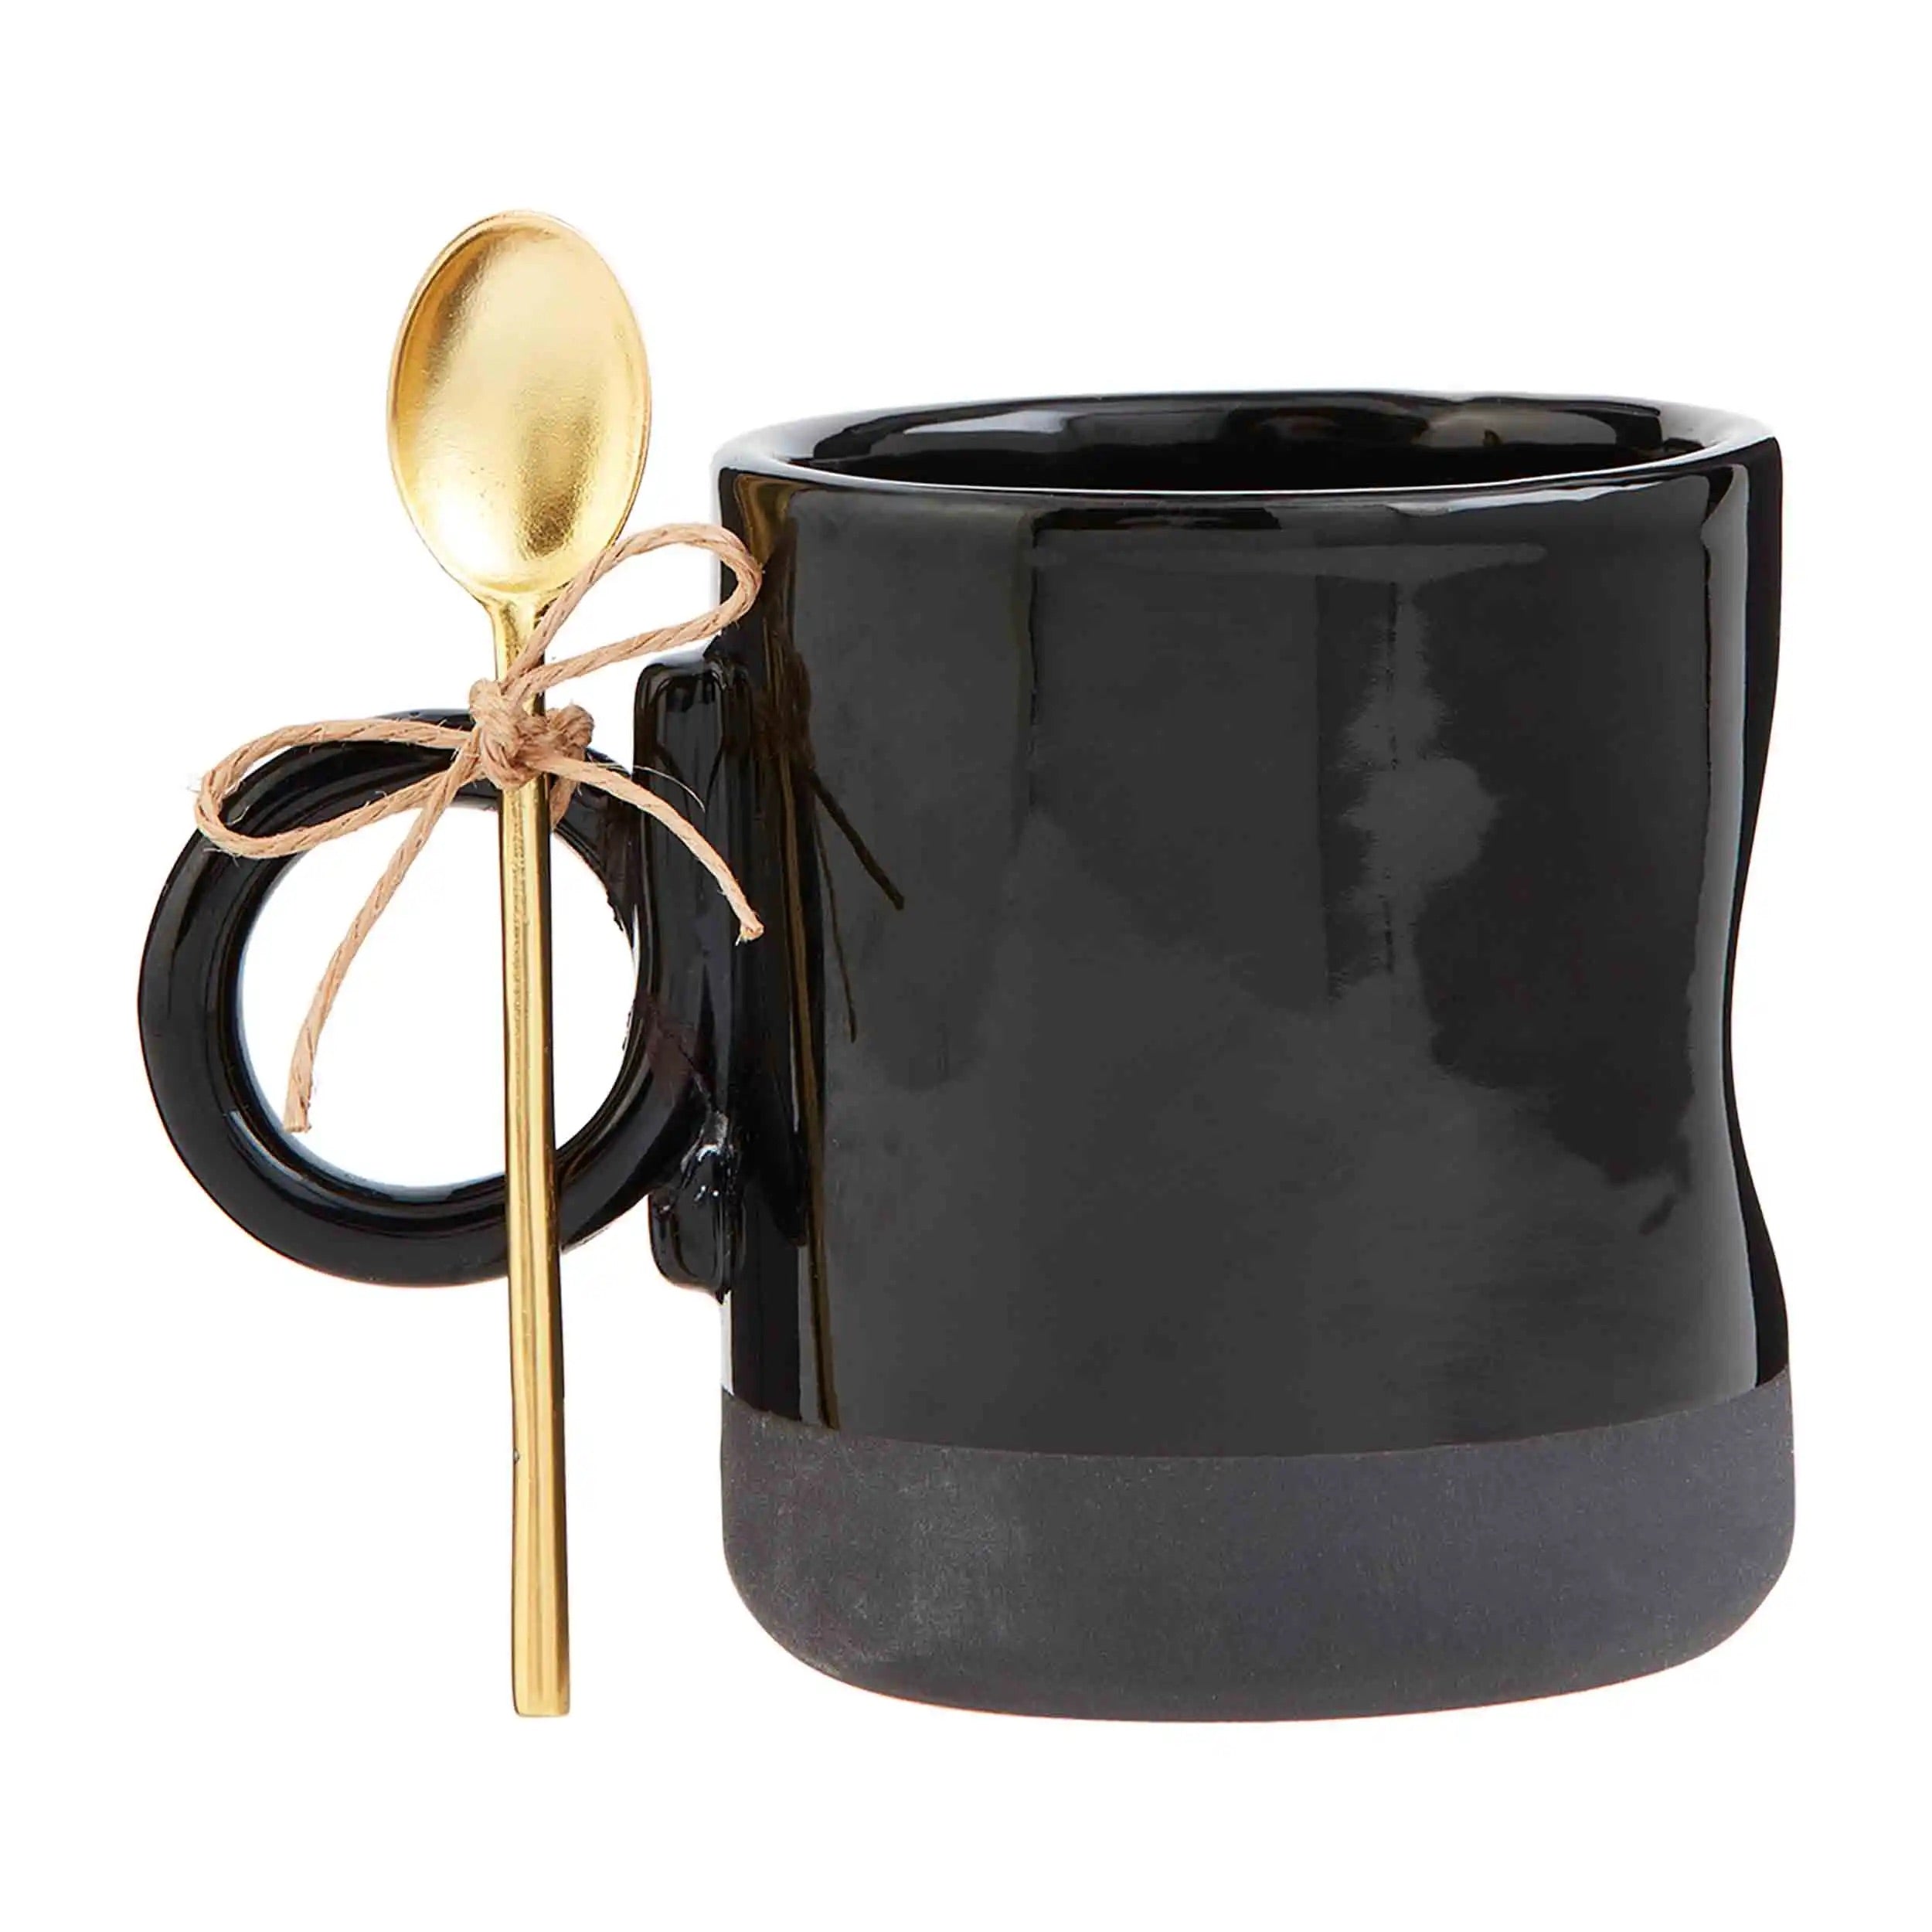 Coffee Mug & Spoon Set